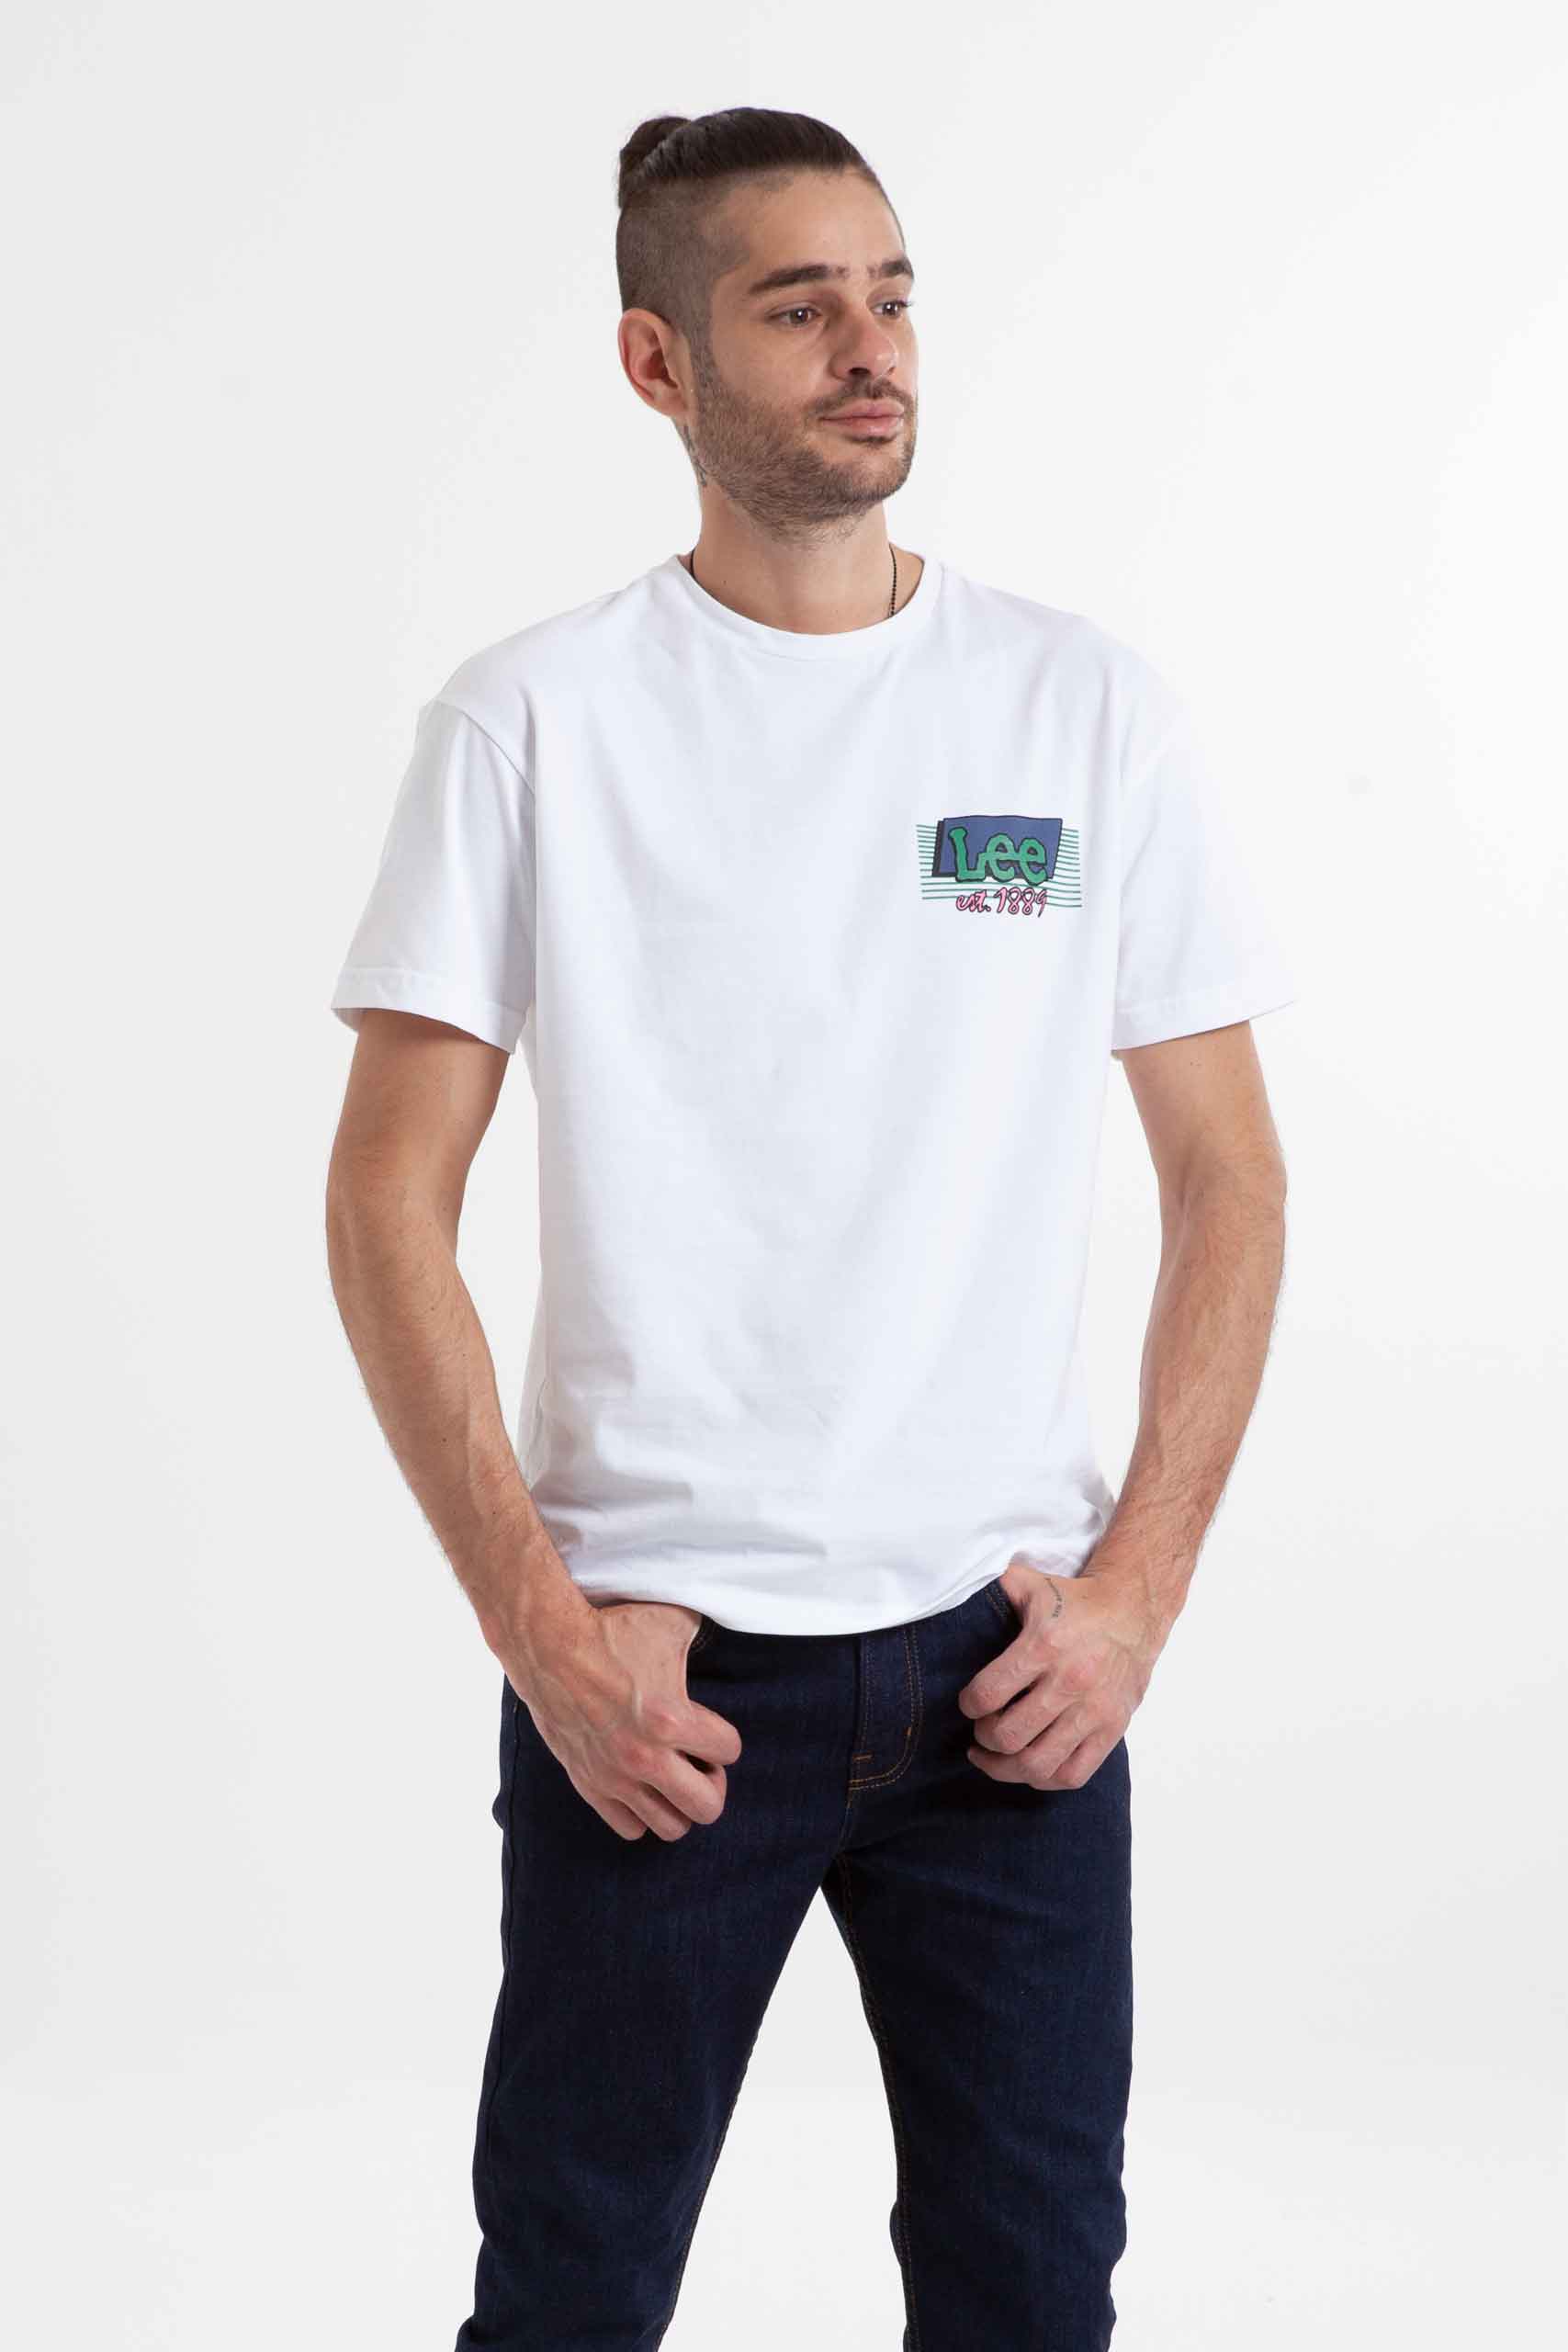 Vista frontal de camiseta de color blanco con estampado marca lee